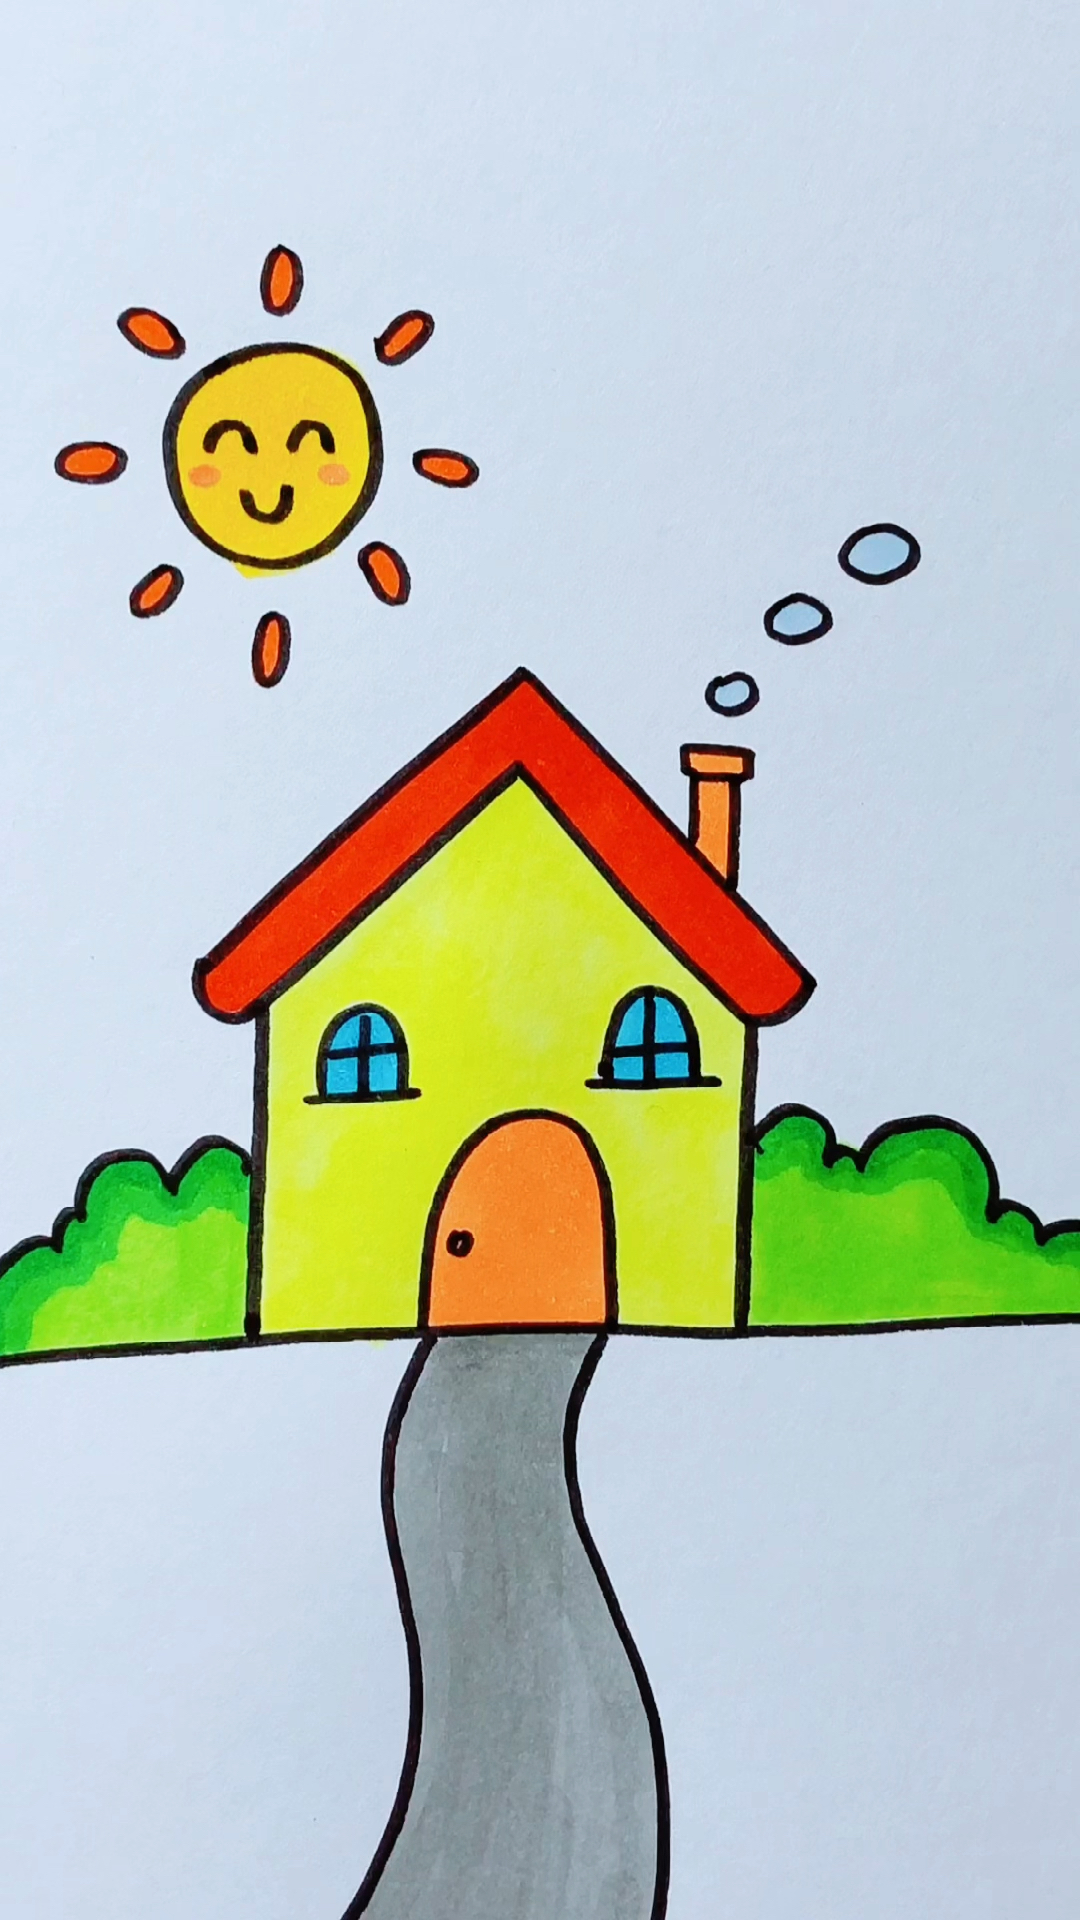 房子画法简单图片